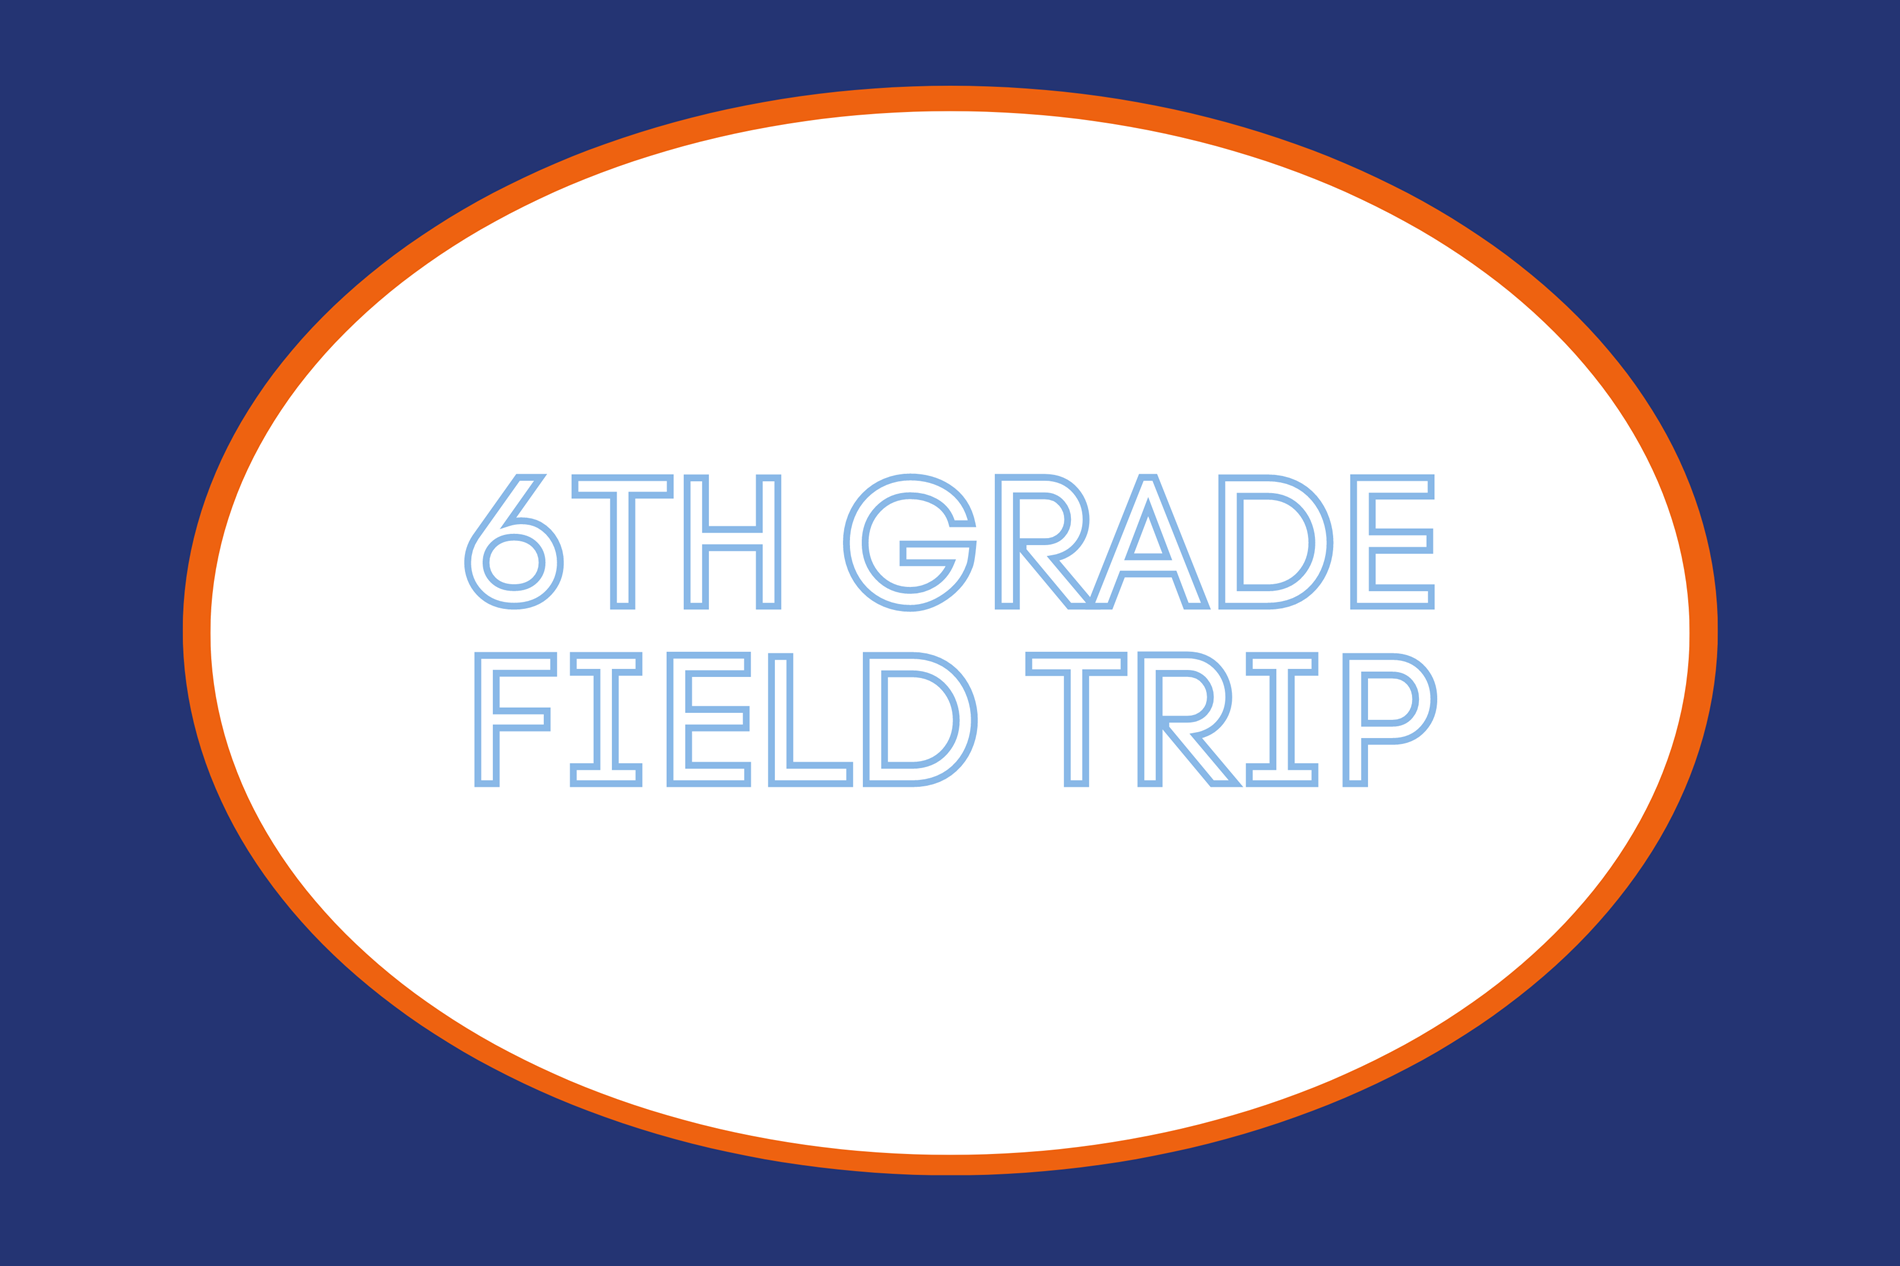 sixth grade field trip